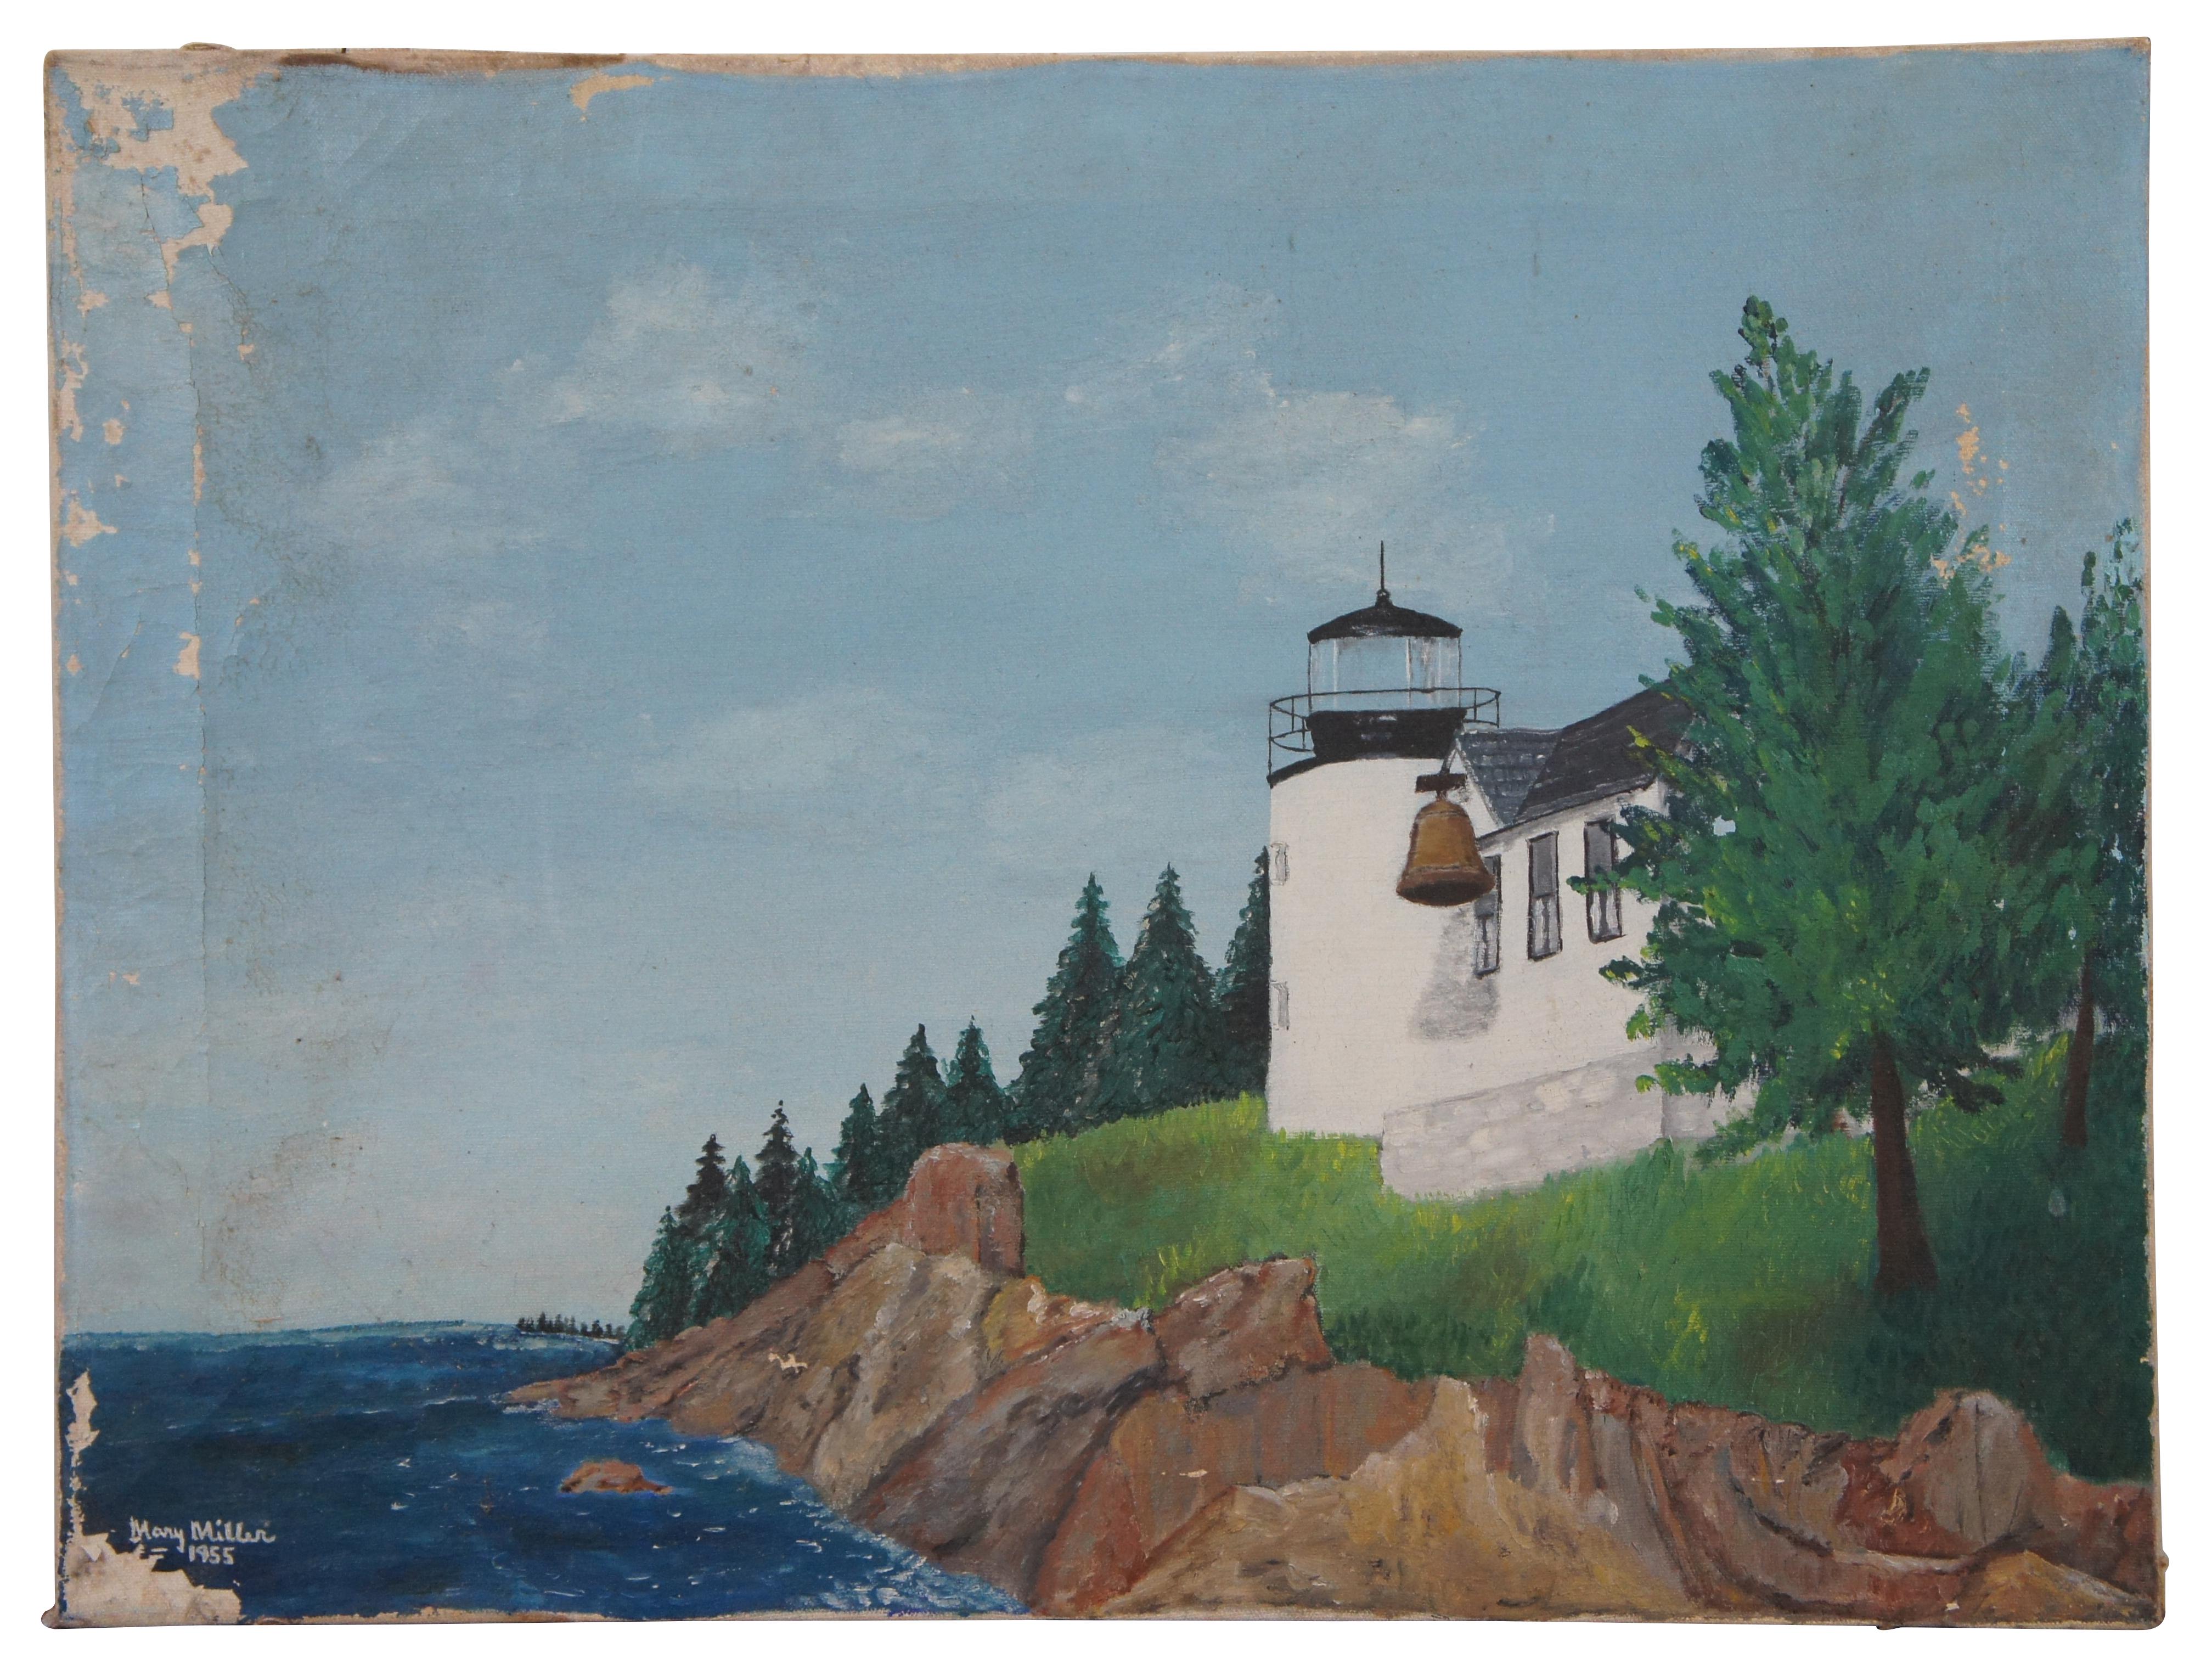 Ensemble de trois peintures de paysages sur toile non encadrées des années 1950 par Mary Miller, représentant des paysages avec des arbres, des montagnes enneigées, des ciels nuageux, des fermes / granges, des océans / lacs, et un phare.  Daté de